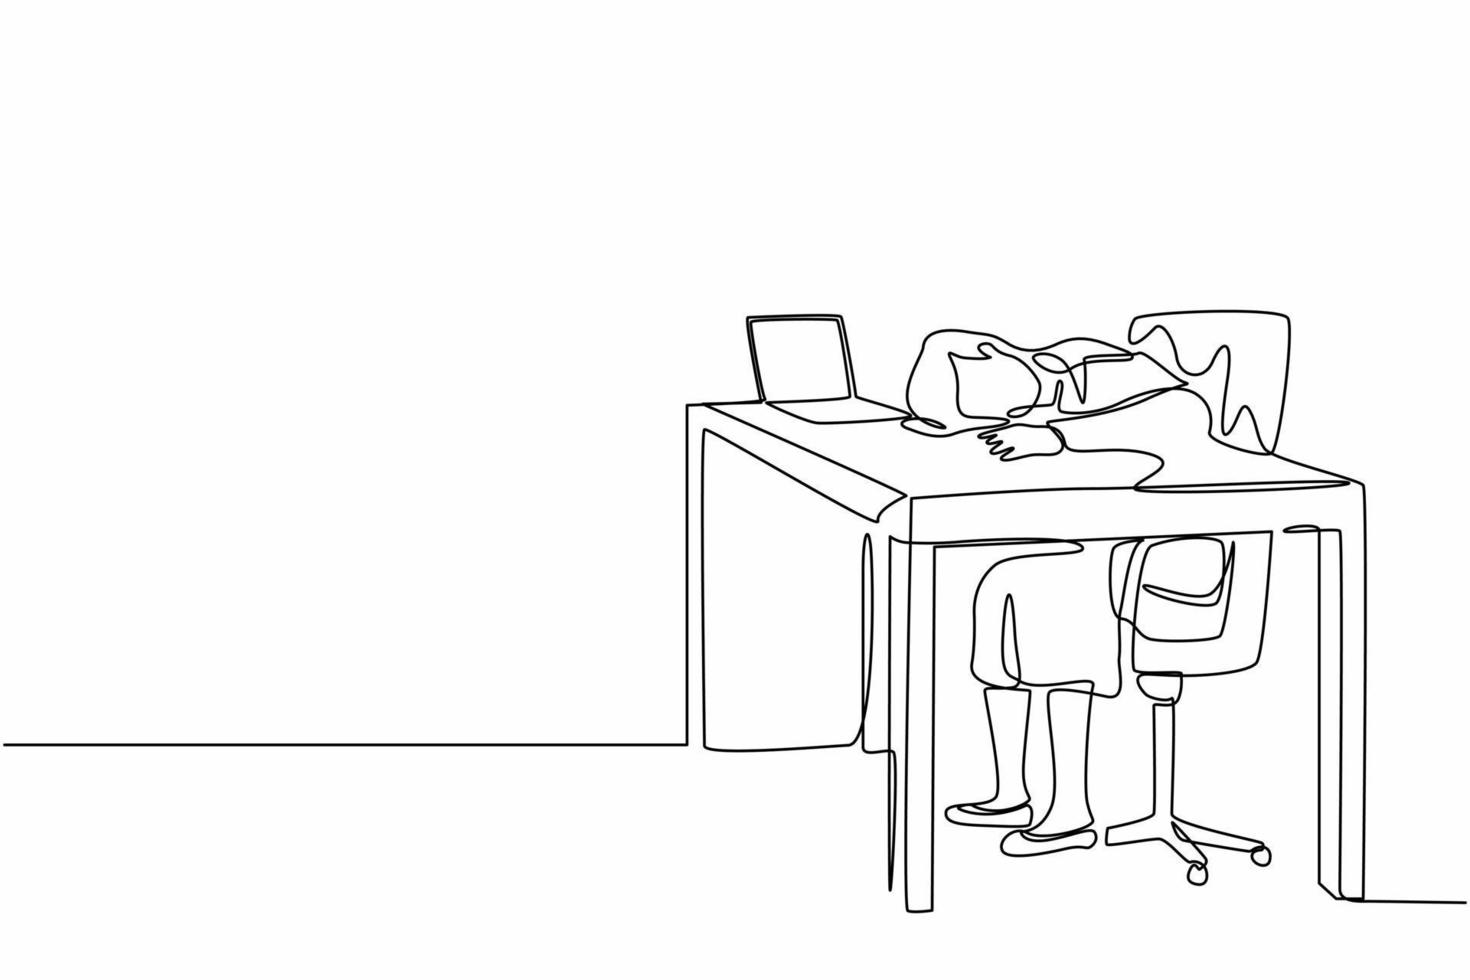 dibujo de una sola línea continua agotada, enferma y cansada gerente femenina en la oficina triste y aburrida sentada con la cabeza hacia abajo en la computadora portátil. problemas de salud mental de los trabajadores frustrados. vector de diseño gráfico de dibujo de una línea